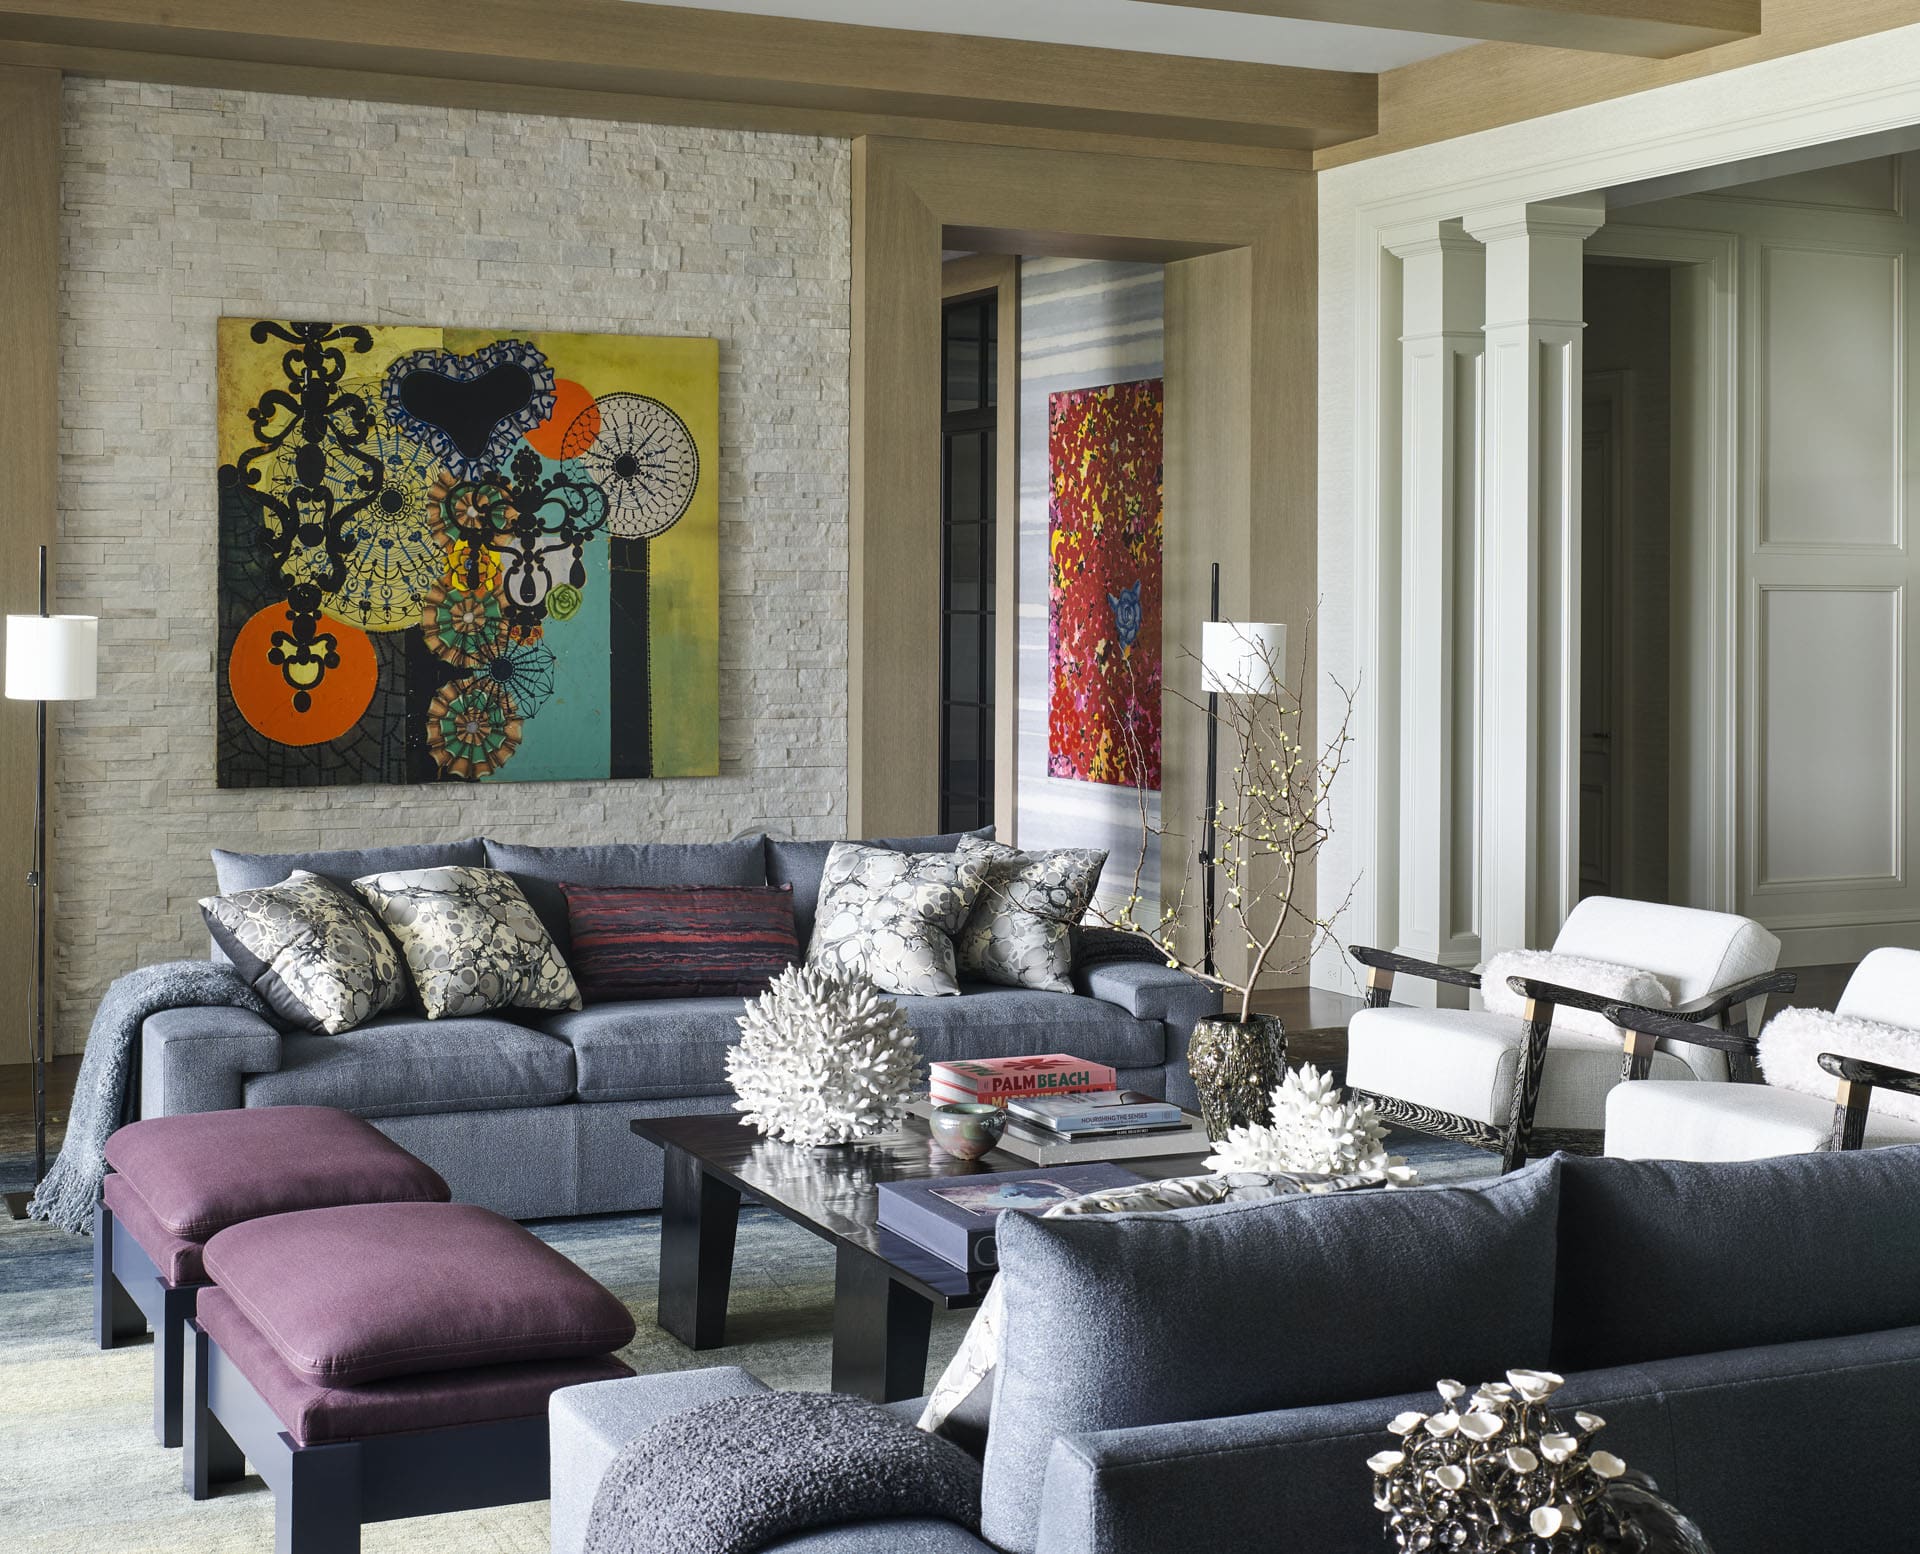 rodney lawrence living room interior design florida beach villa